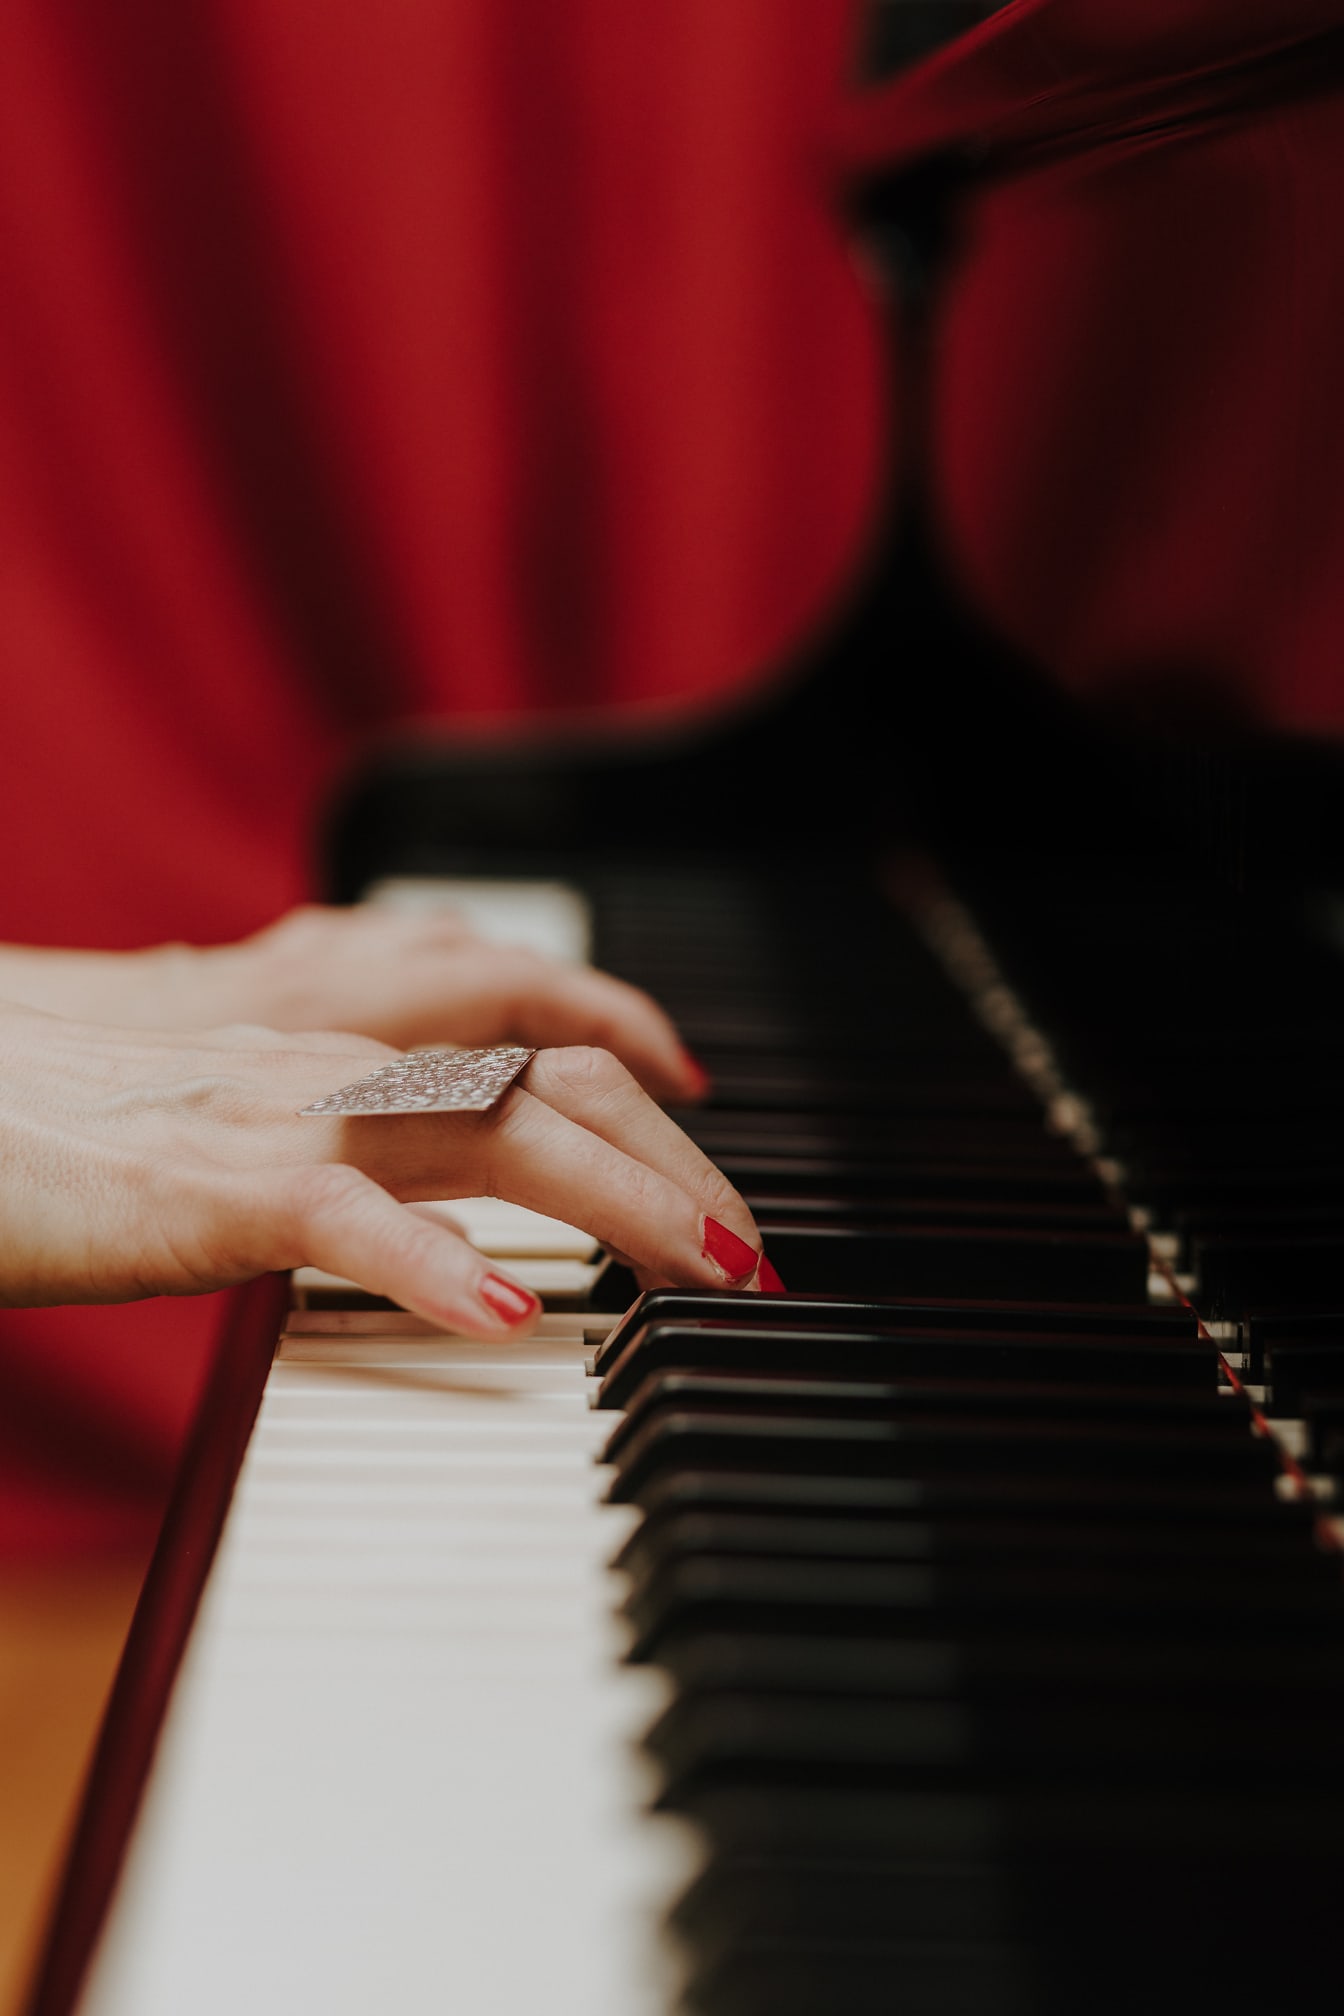 Nærbillede af hånd af musiker, der spiller klaver